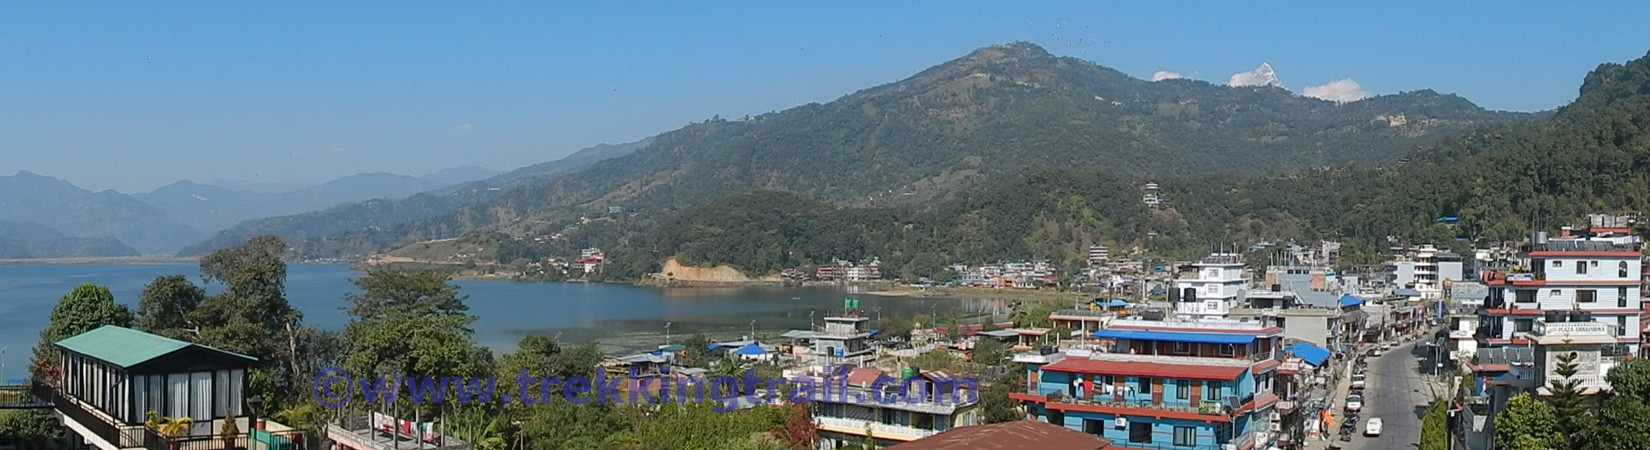 himalayas view tour